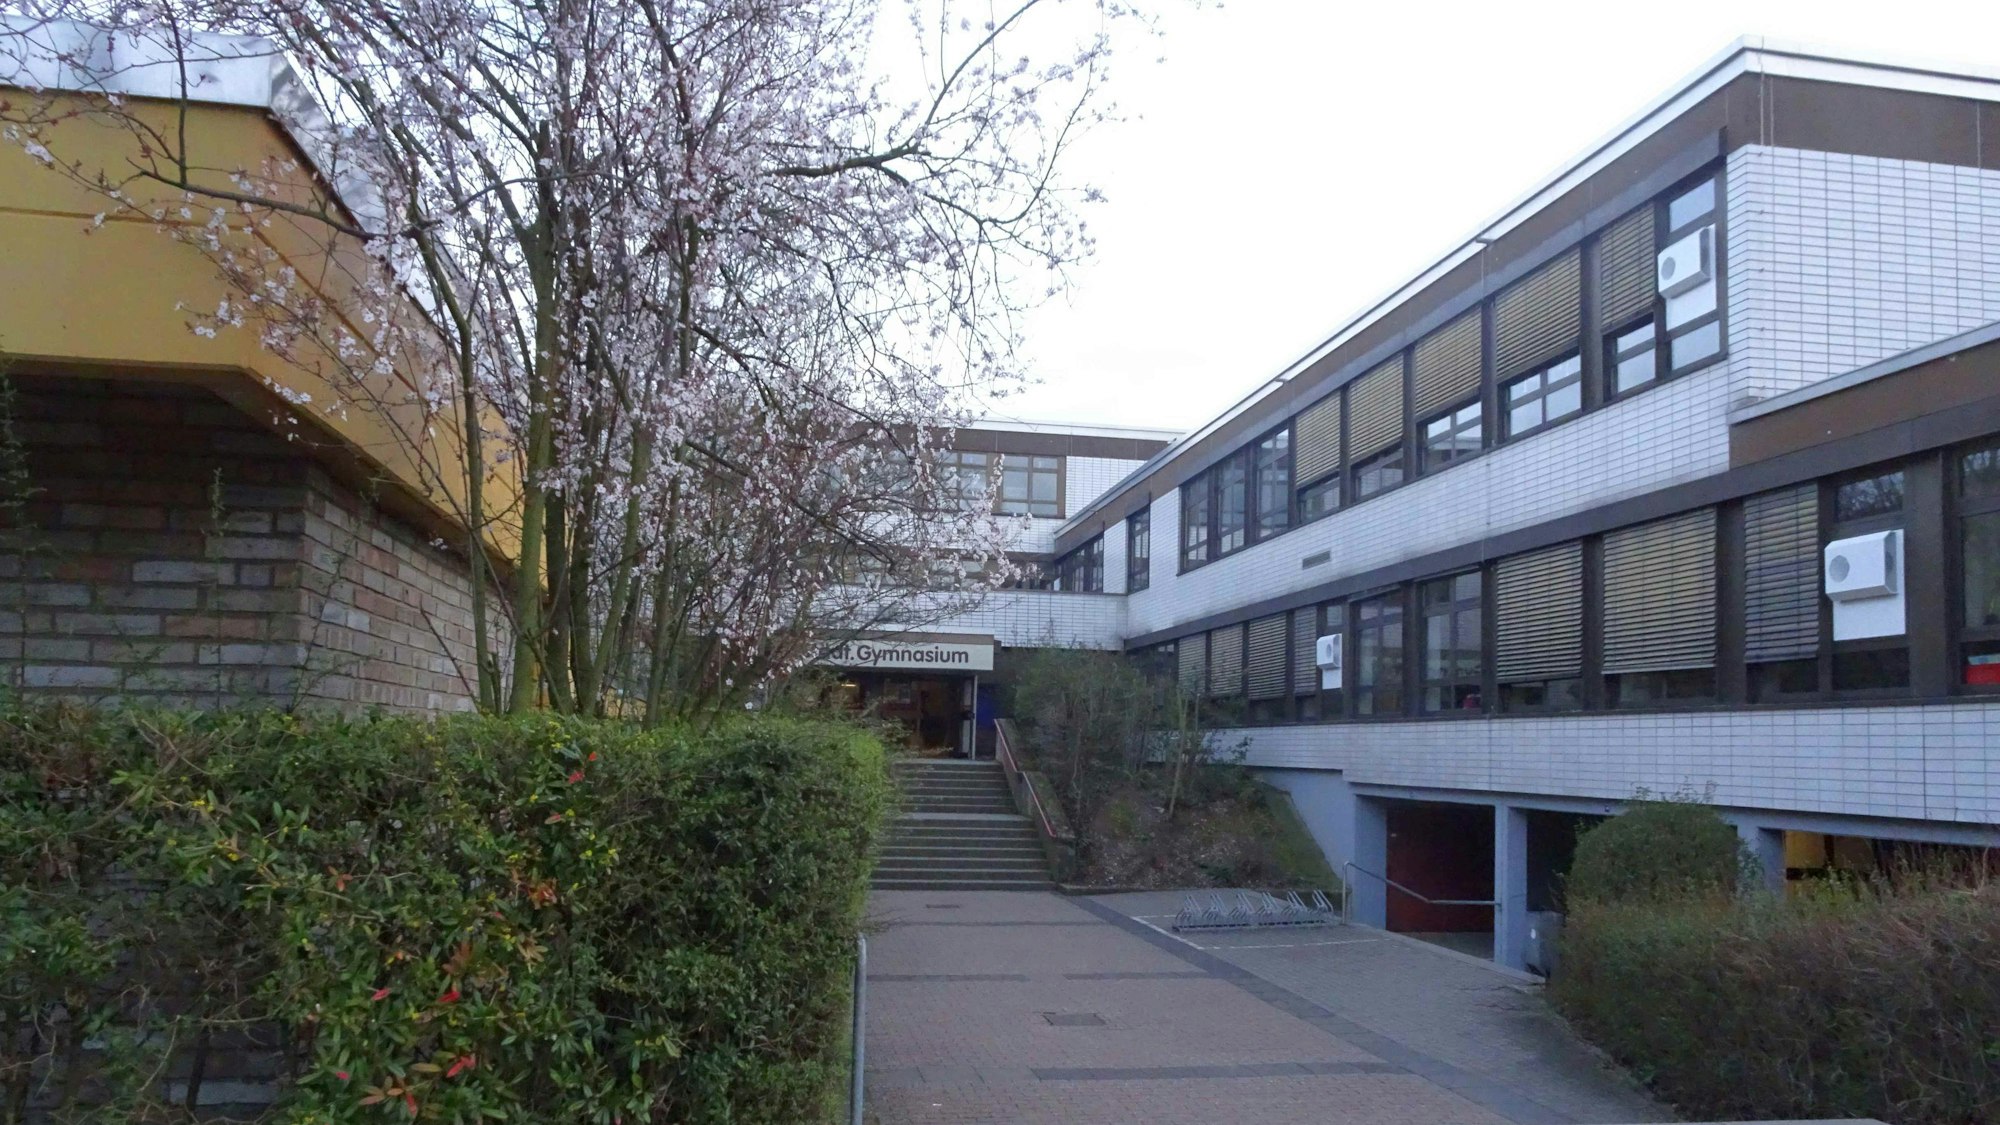 Einer der Eingänge des Städtischen Gymnasiums Rheinbach. Das Gebäude stammt aus den 1970er Jahren.